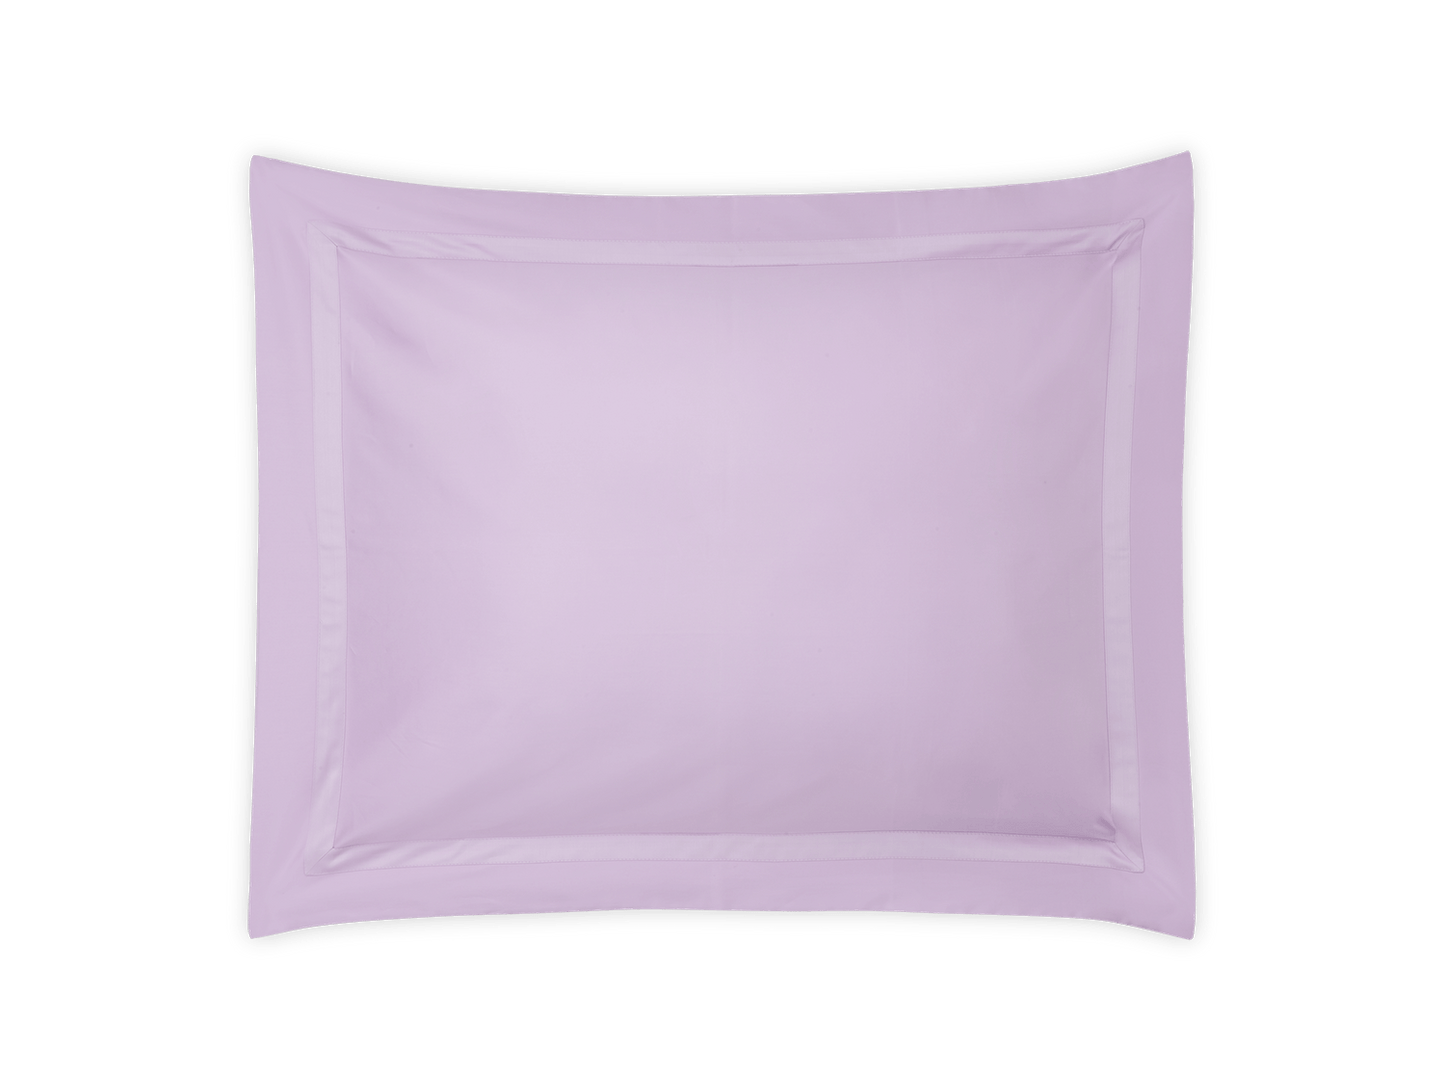 Nocturne Sham - Decorative Pillow Sizes